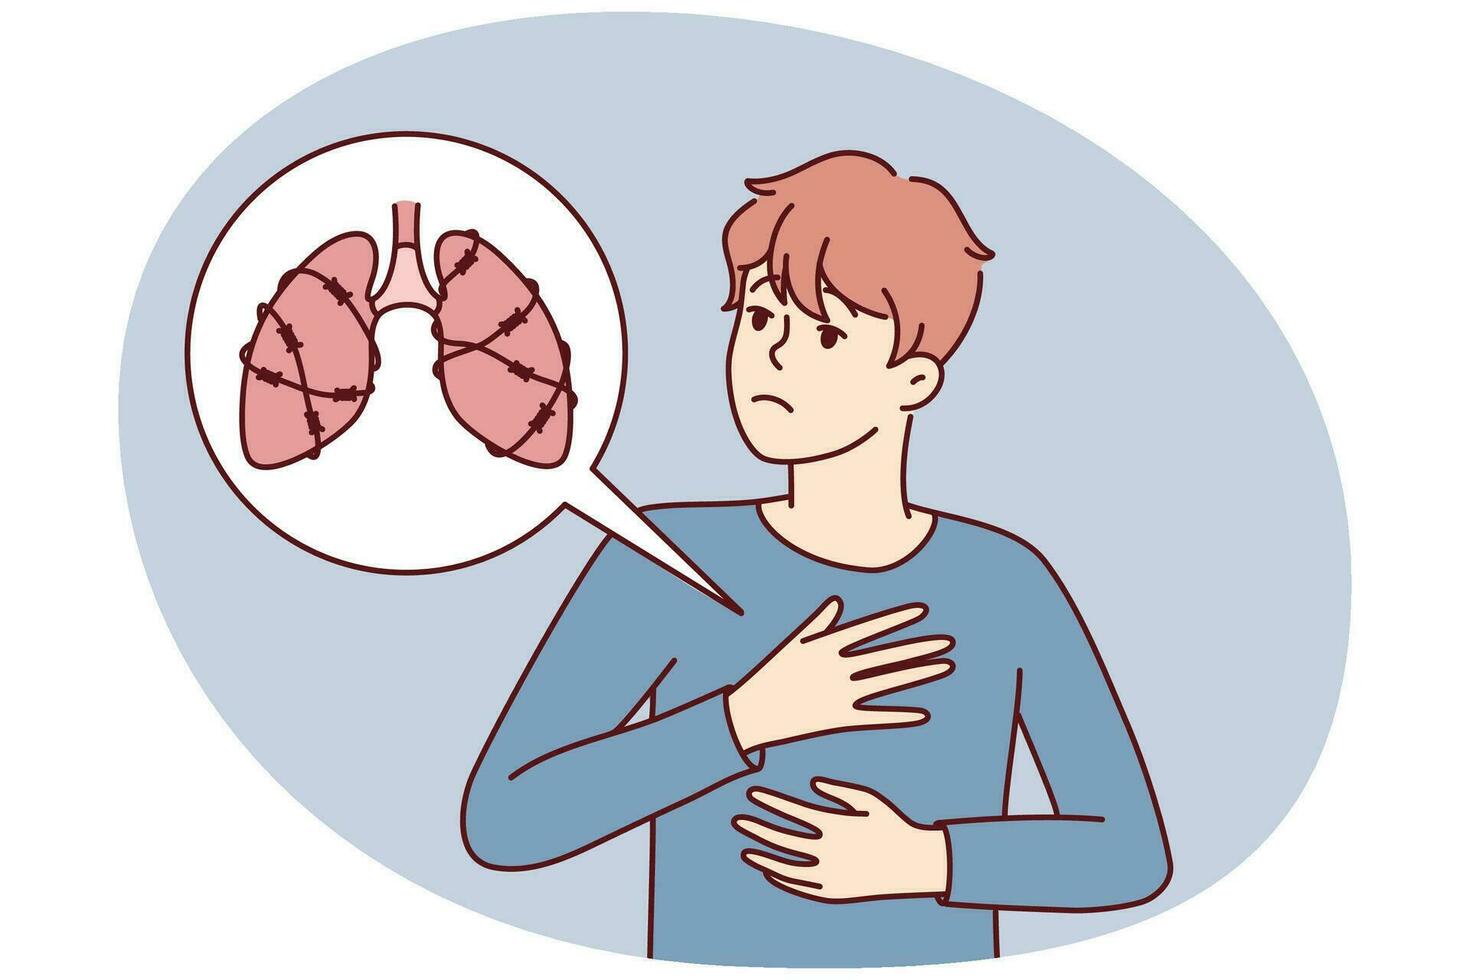 ongezond Mens lijden van longen ziekte nodig hebben medisch helpen. onwel mannetje worstelen met ademen ziekte. gezondheidszorg concept. vector illustratie.